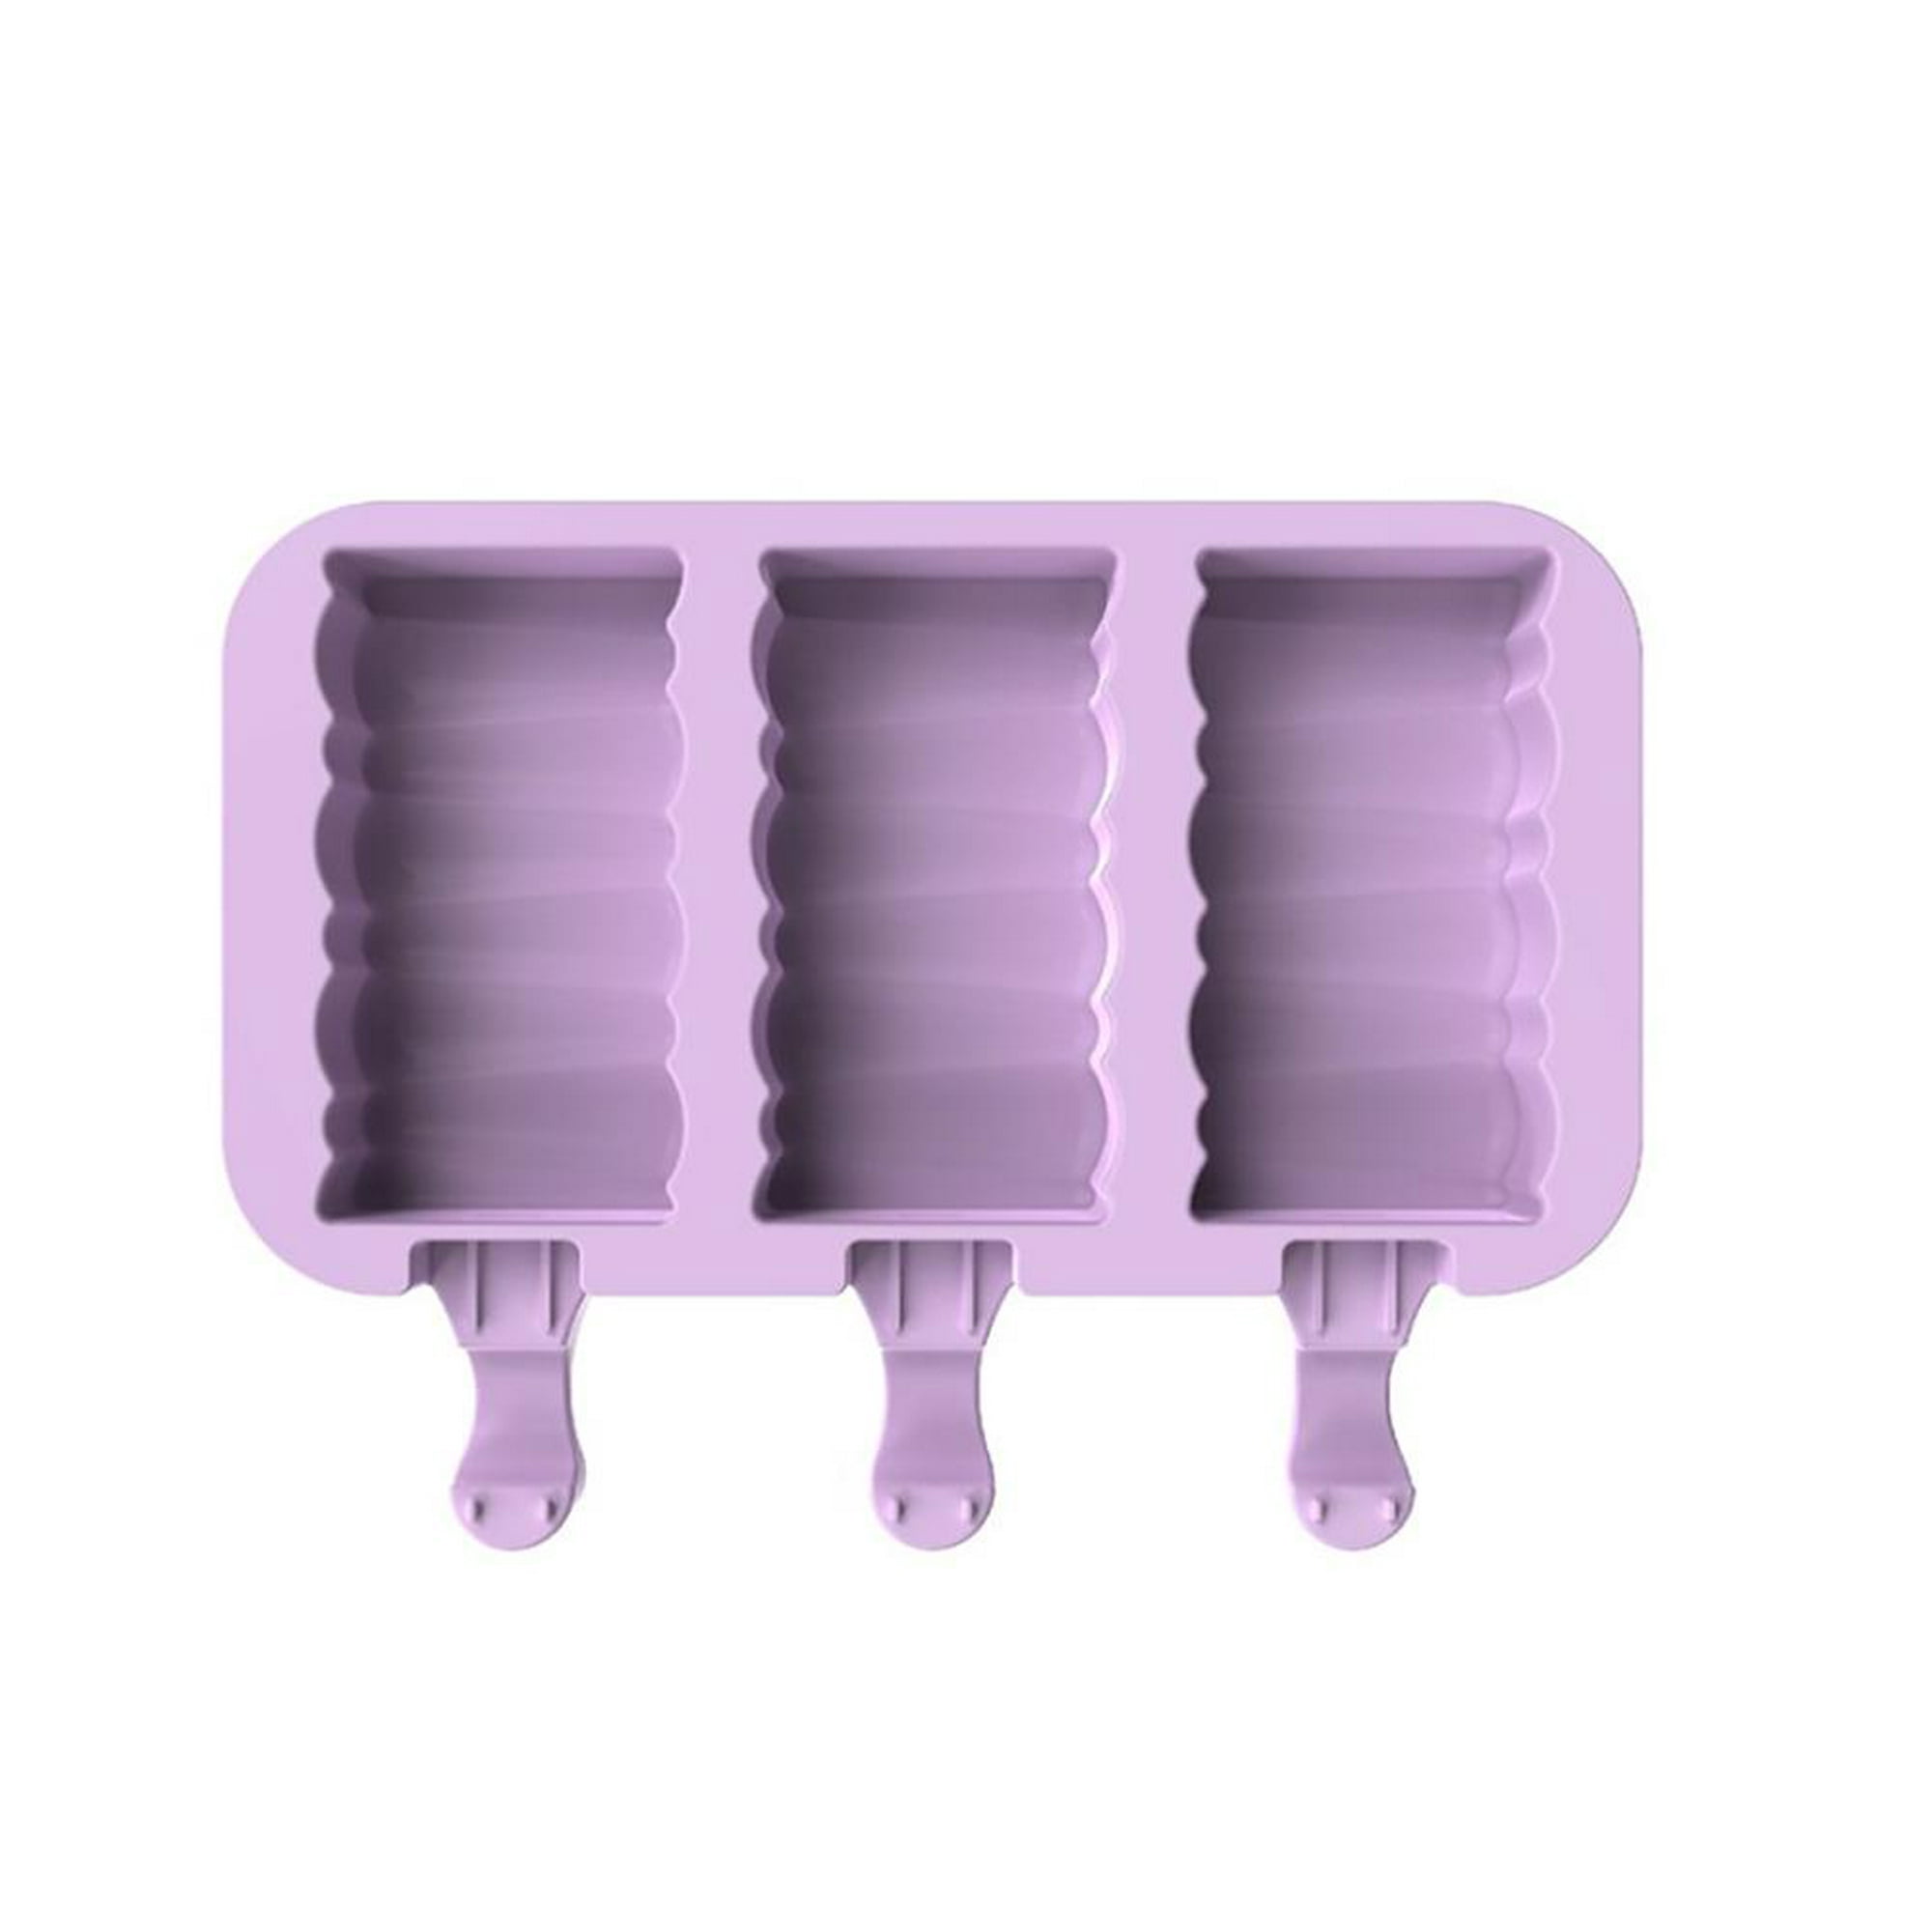  Moldes caseros de silicona para paletas con tapa, sin BPA, moldes  para paletas de hielo con 3 cavidades, para hacer pasteles, helados, paletas  de fácil liberación, con 100 palitos de paletas (